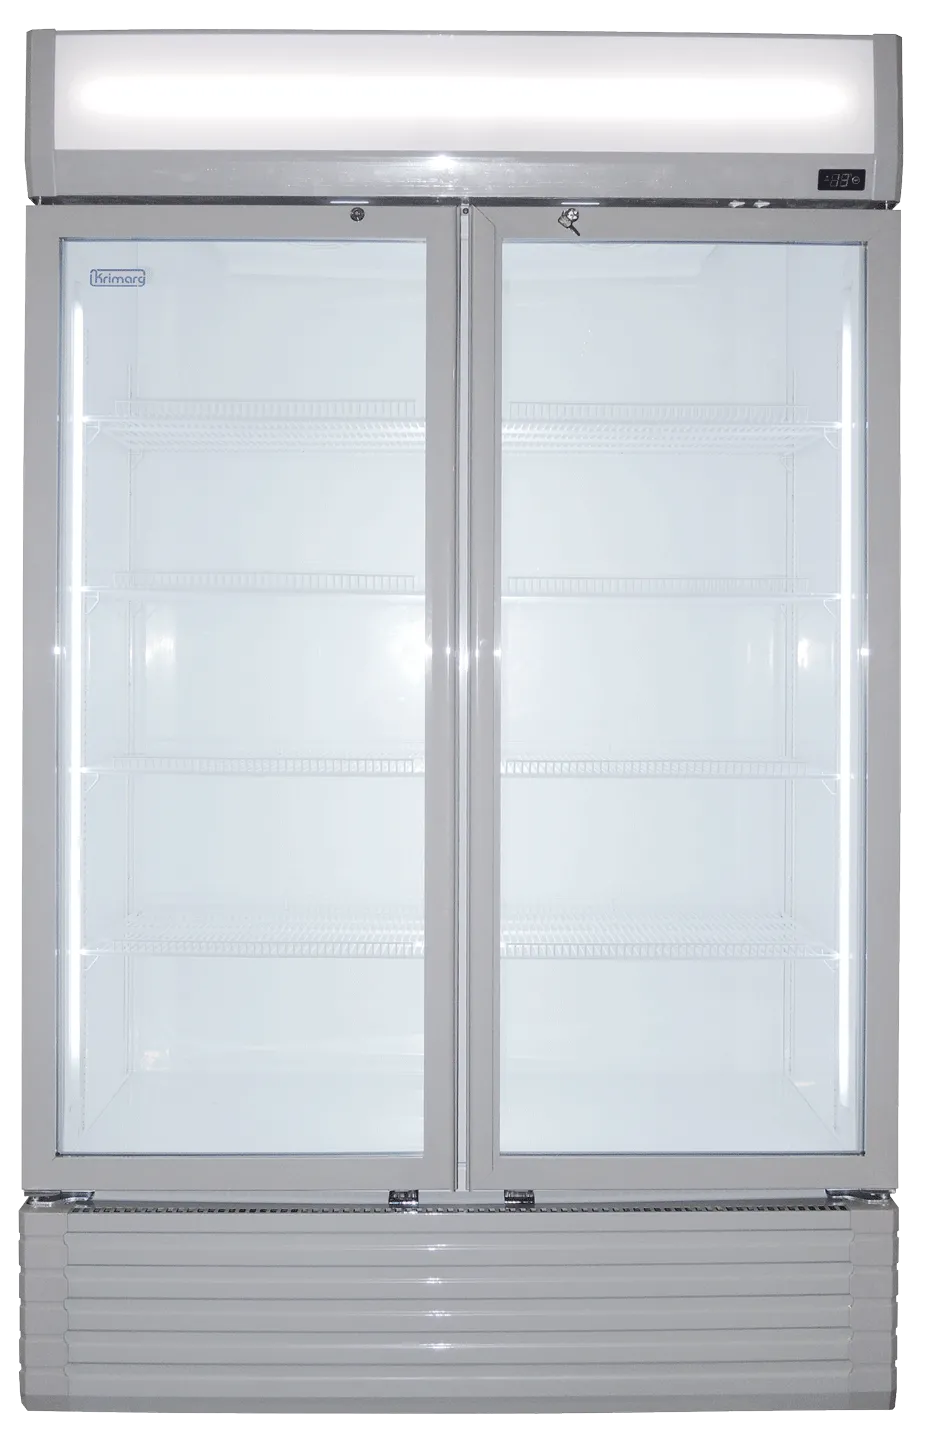 comemrcial-fridge